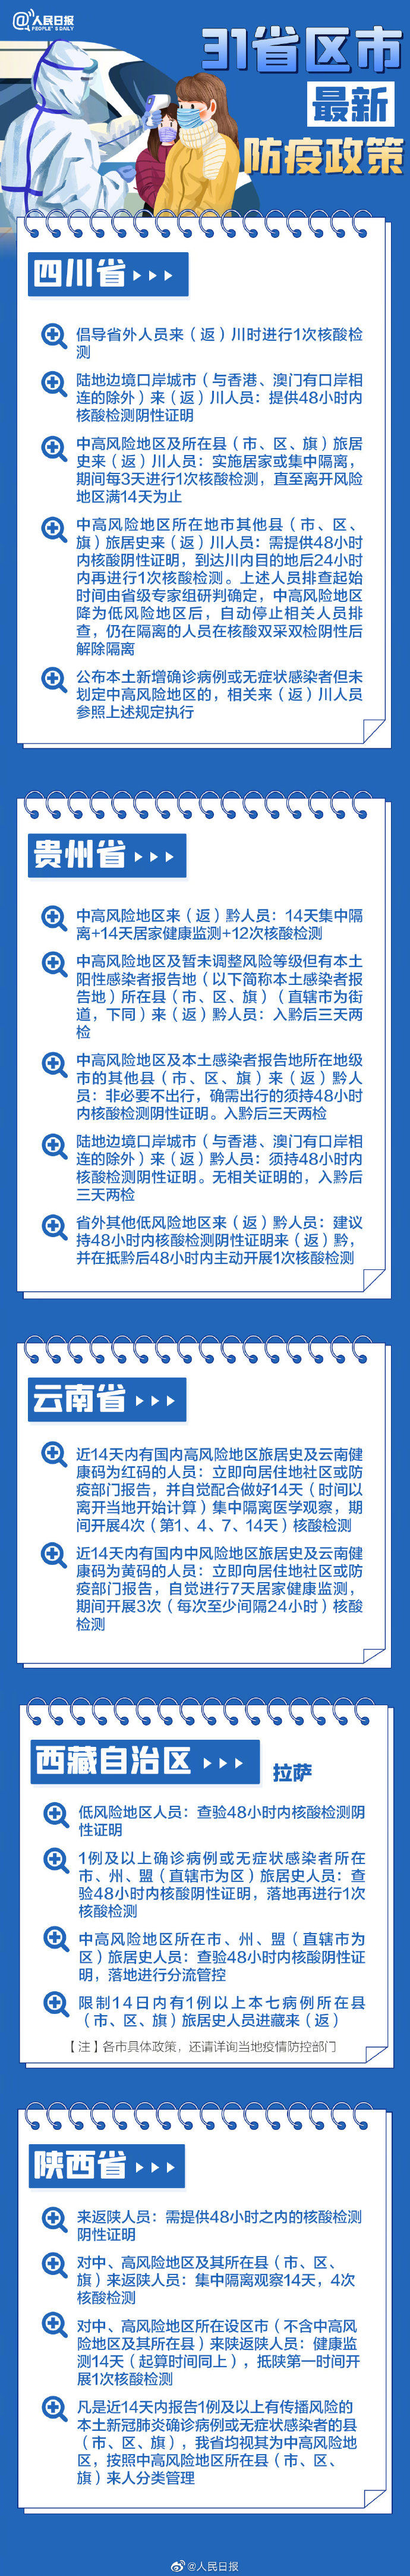 事关春节回家 31省区市最新防疫政策来了